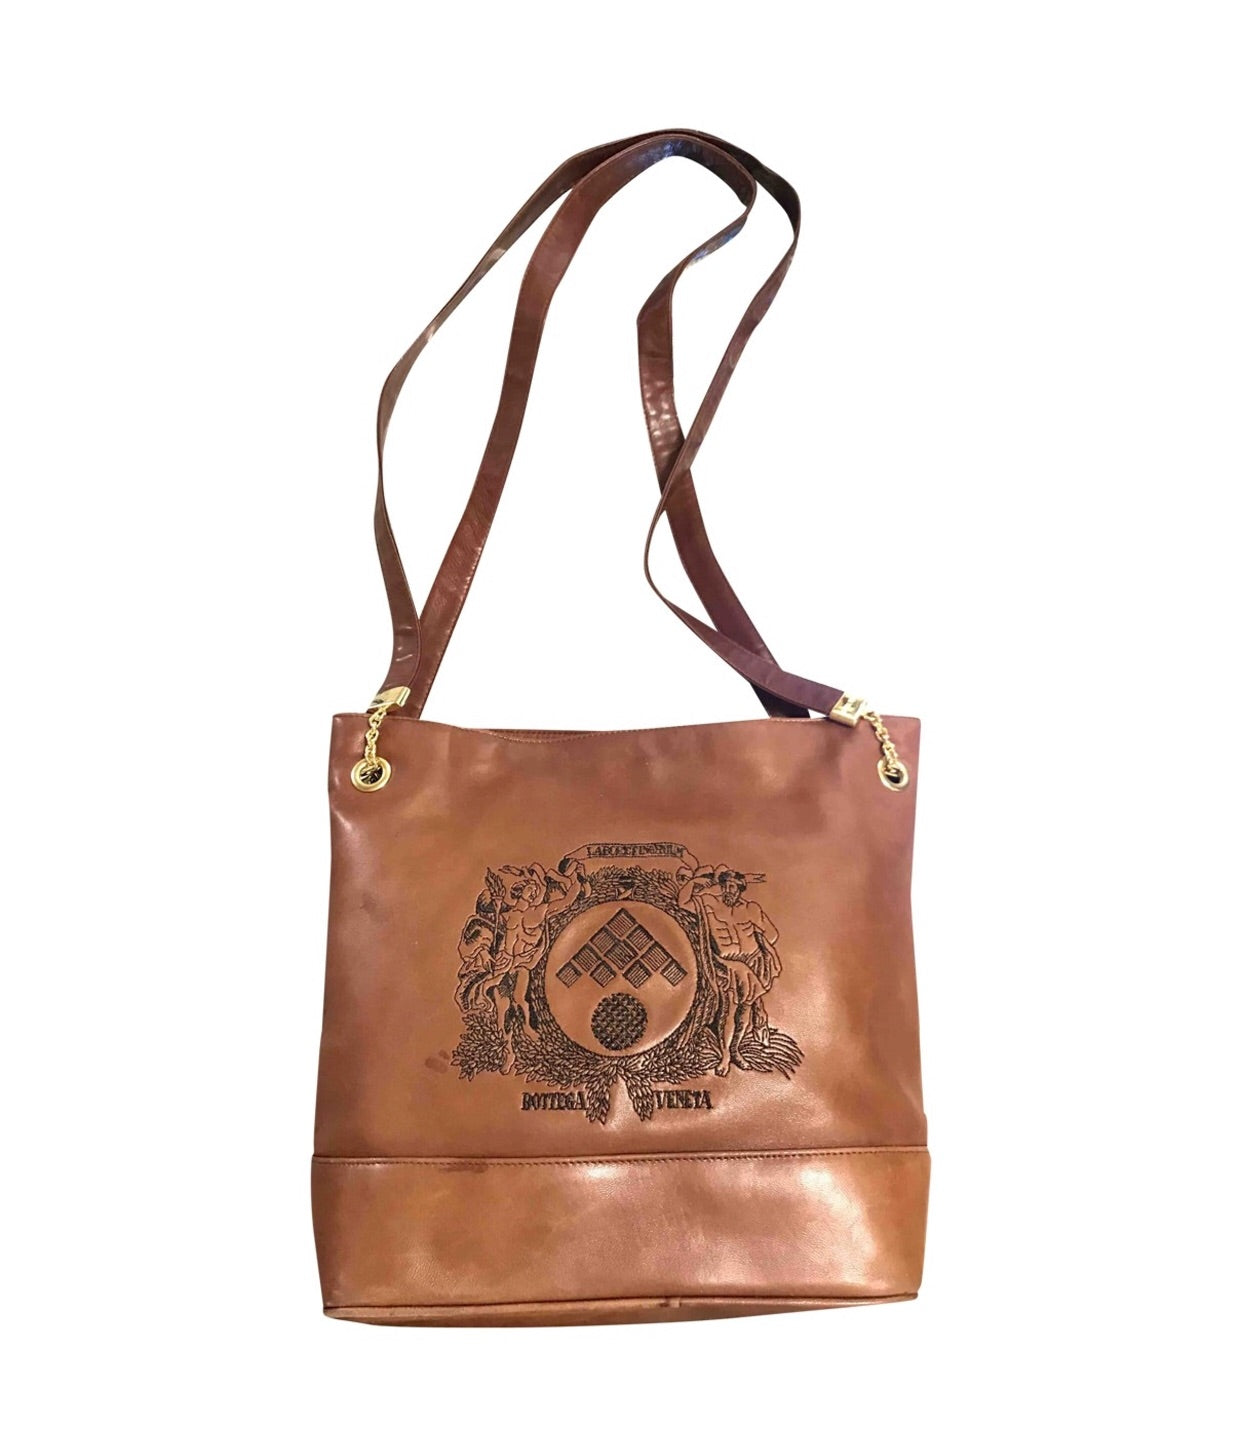 Emporio Vintage Boho Bag brown leather logo shoulder knot strap ties hg10